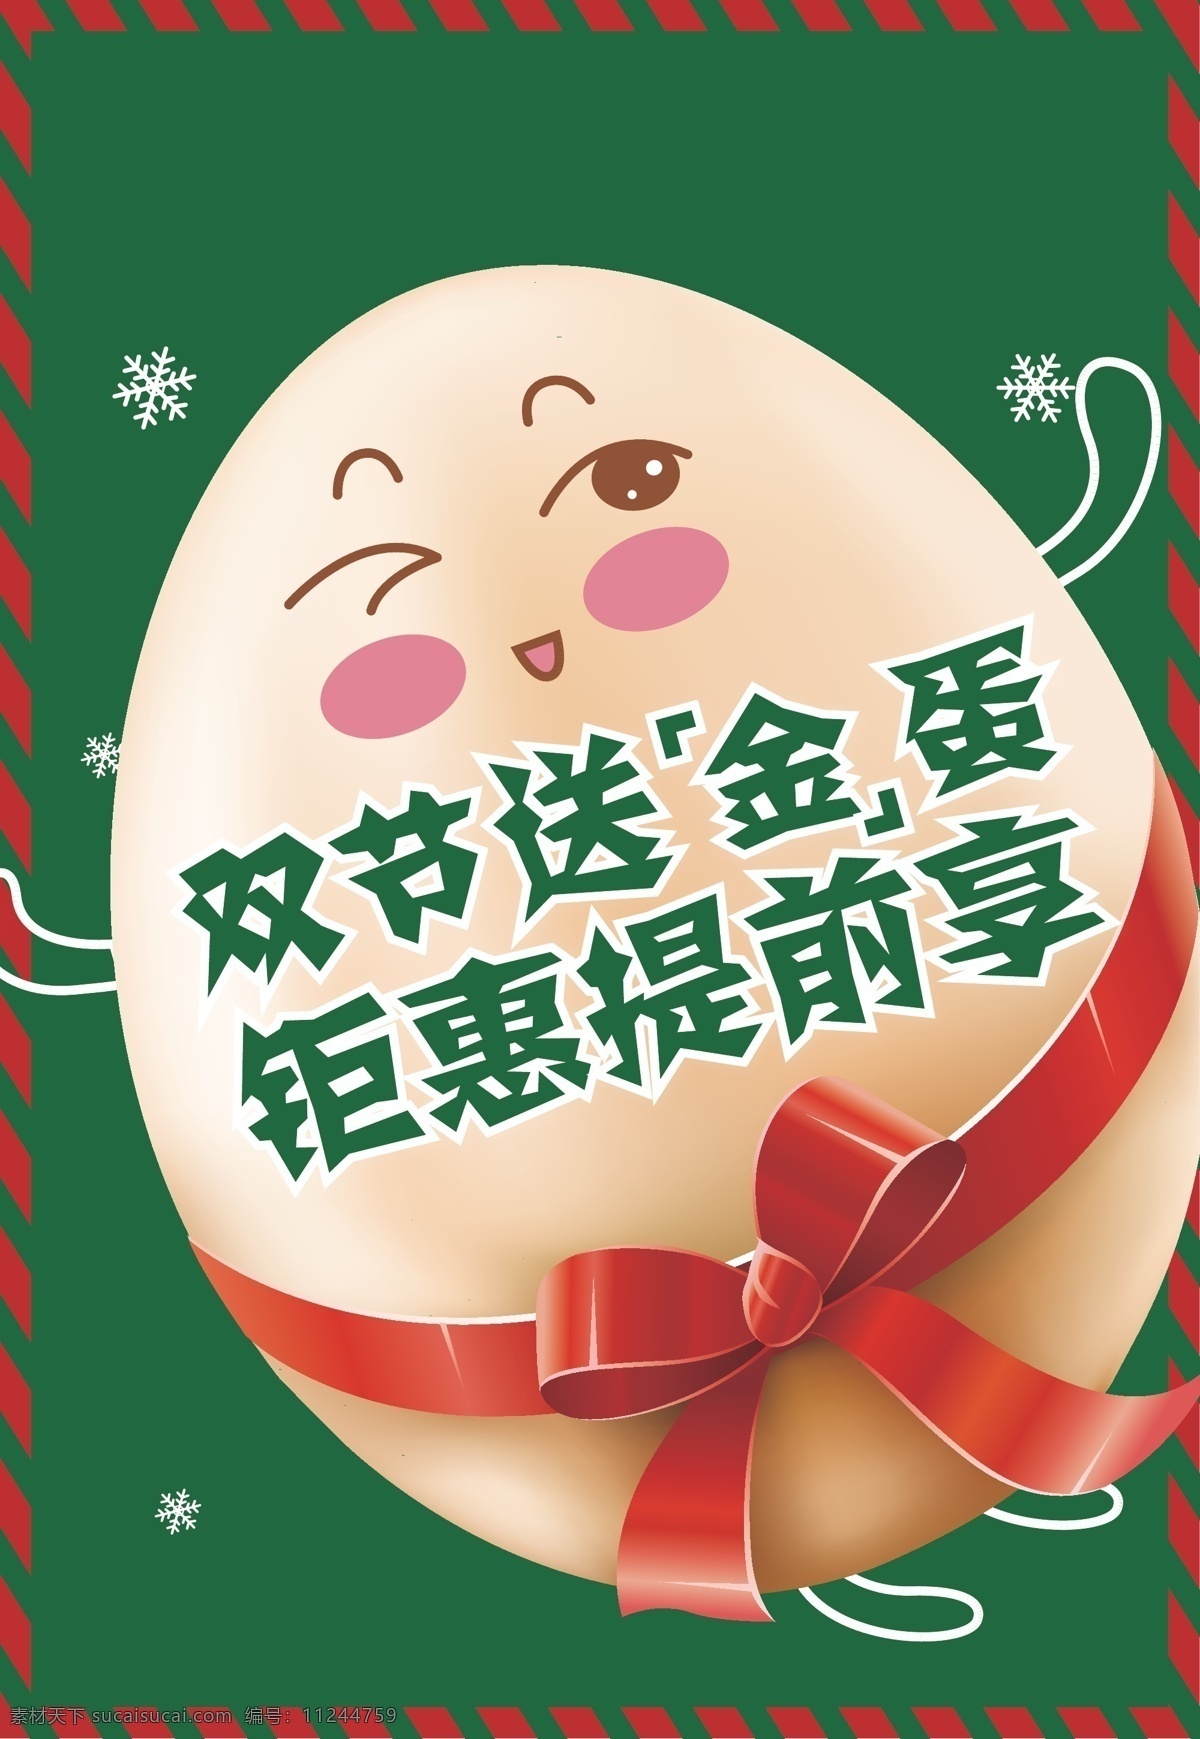 2015 圣诞节 金 蛋 金蛋 鸡蛋 生蛋 可爱圣诞 鸡蛋卡通 蝴蝶结 丝带 雪花 圣诞节素材